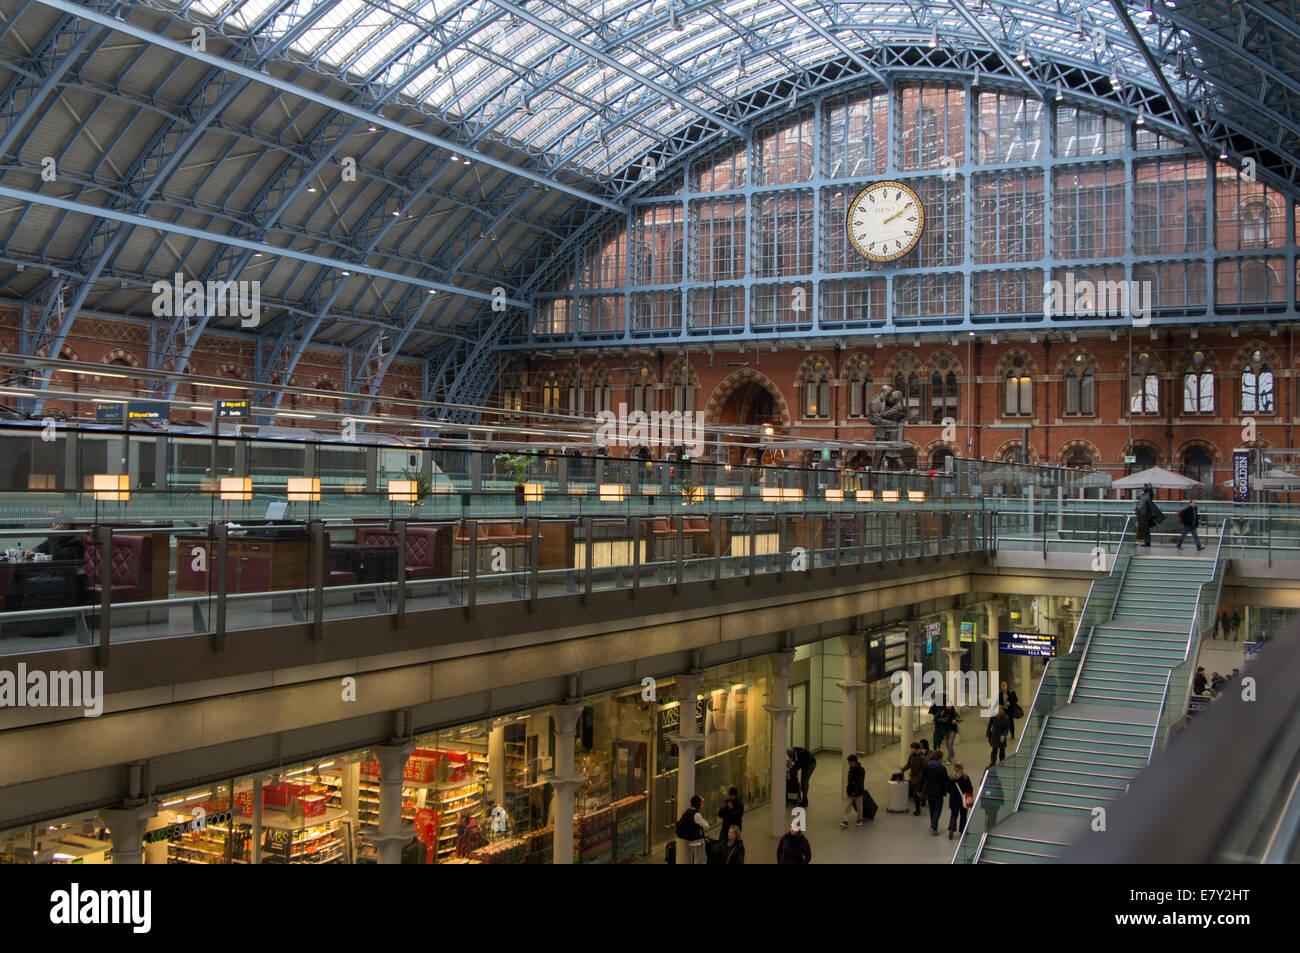 London St Pancras Station - Innenansicht des historischen Barlow zug Halle mit Glasdach und kontrastierenden modernen Arcade Concourse Geschäfte - England, UK. Stockfoto